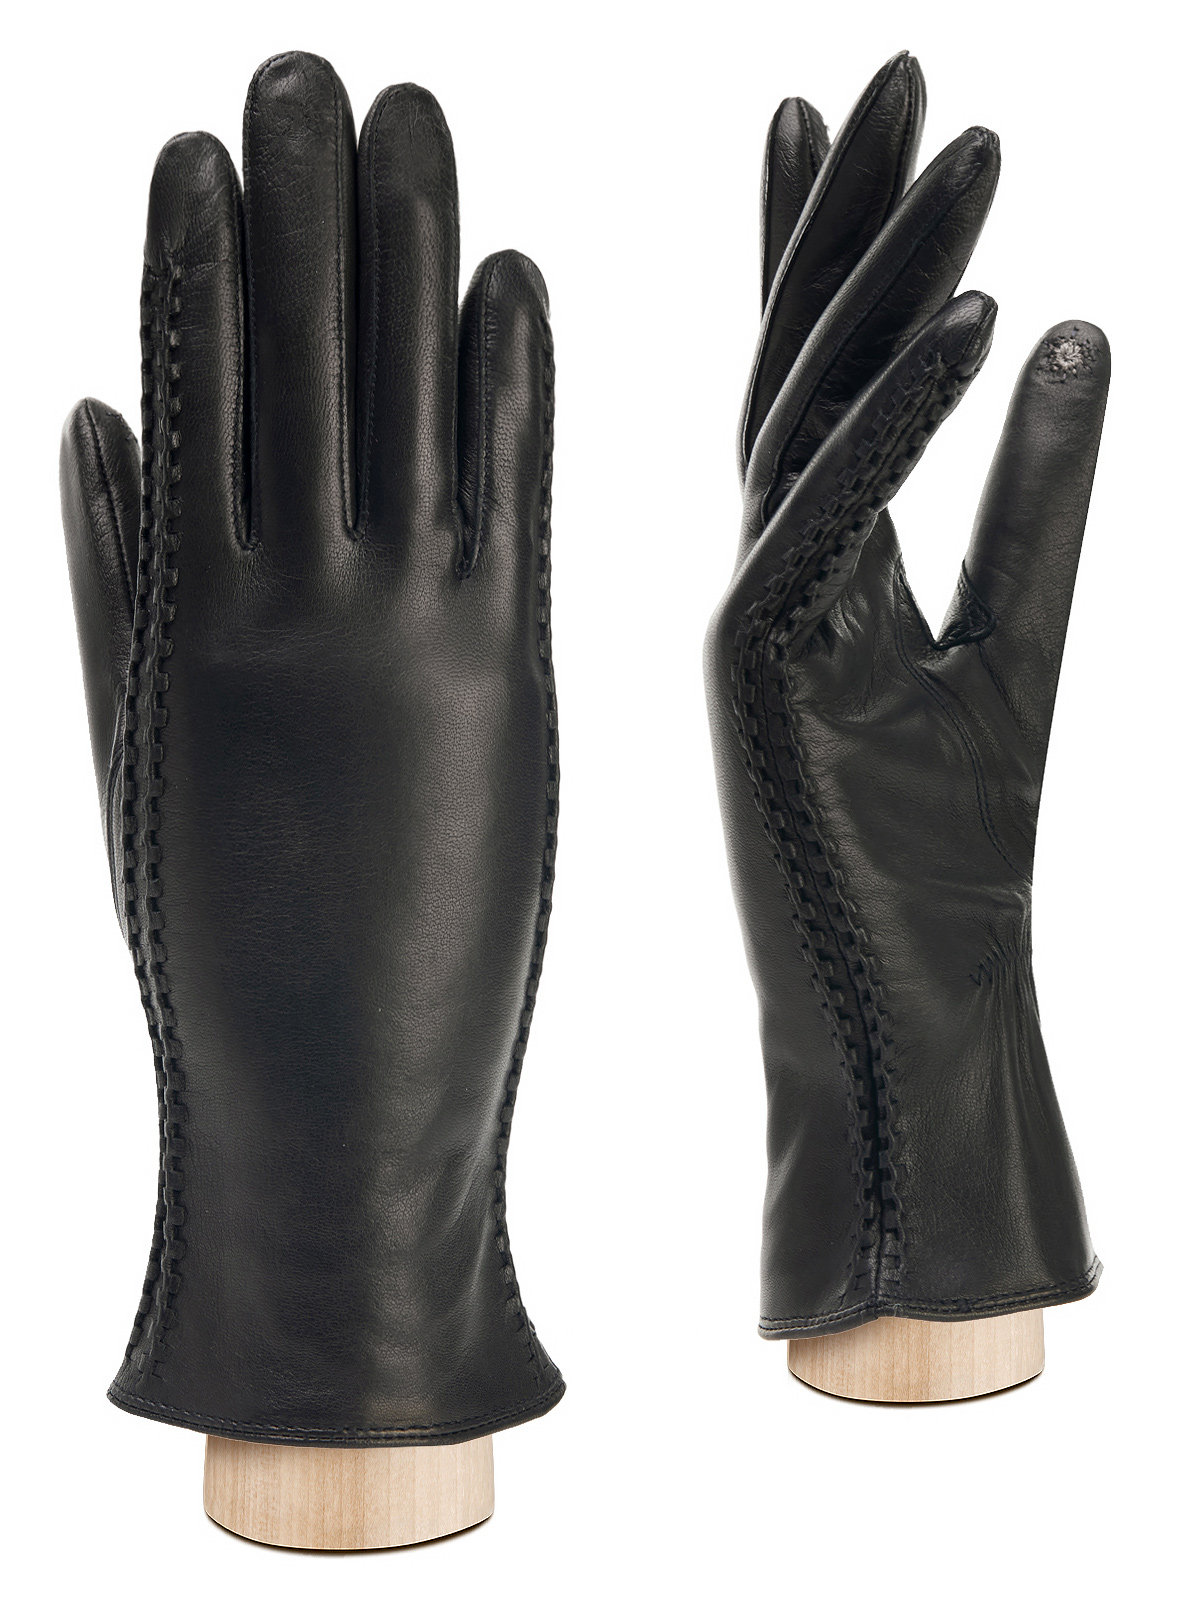 Перчатки женские Eleganzza TOUCH HP91104 черные р. 6,5